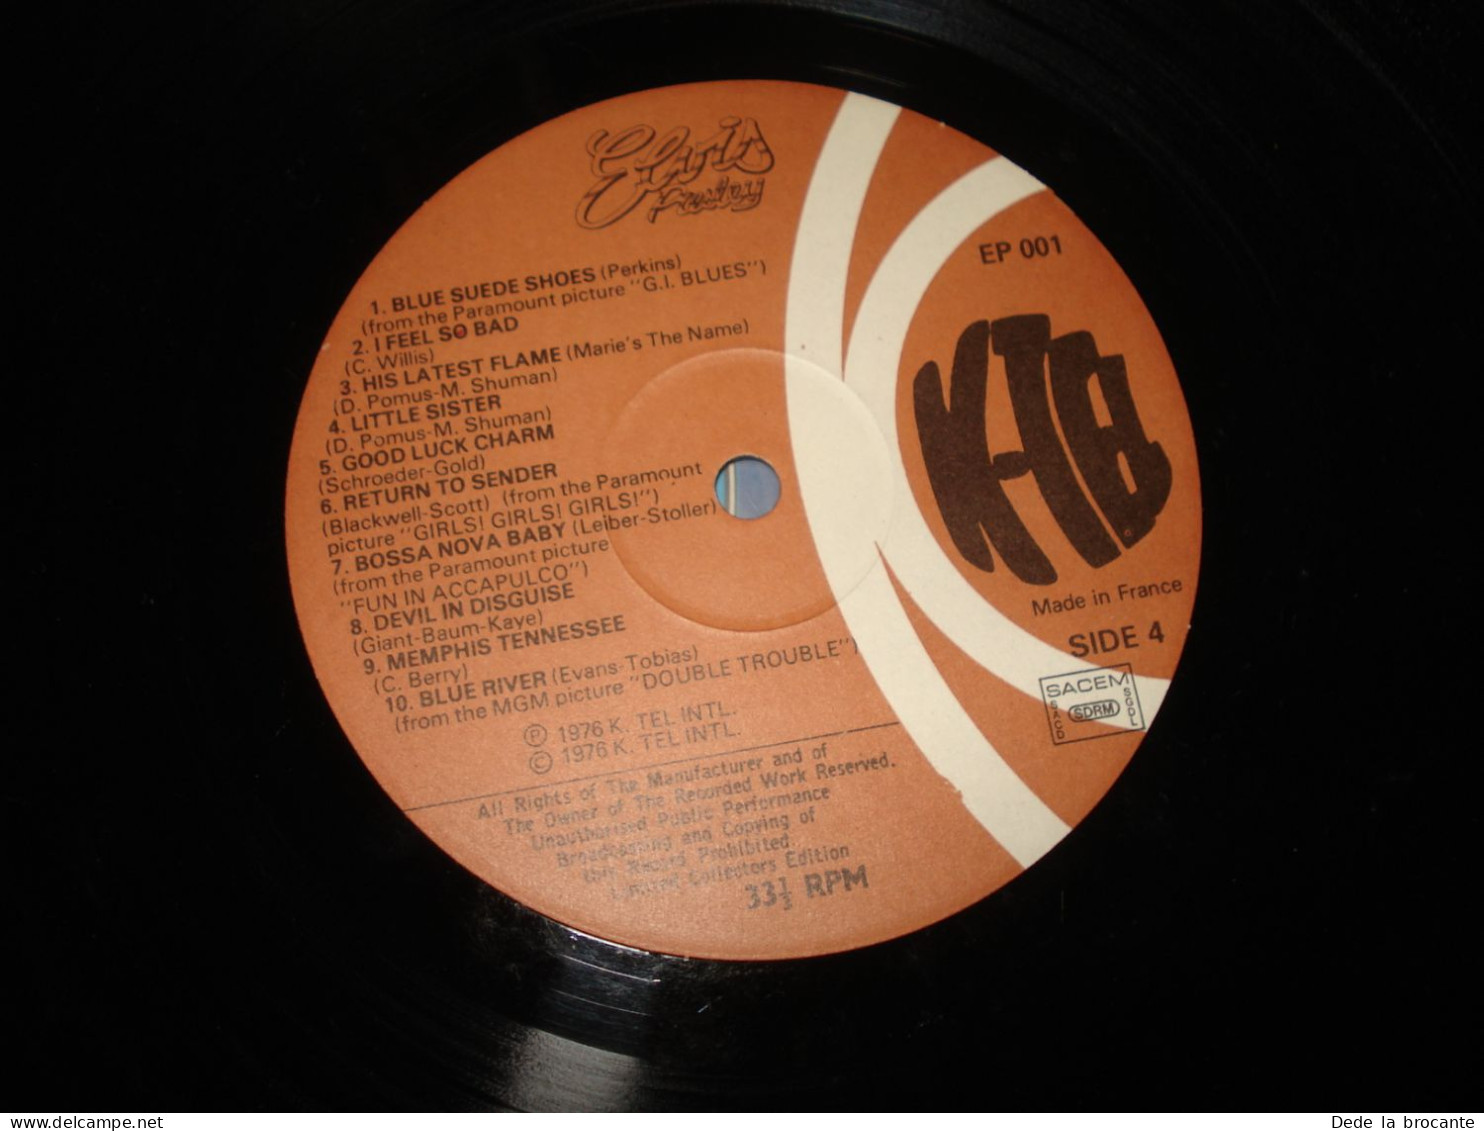 B11 (6) / Elvis " Le roi du " - Double album - K TEL - EP 001 - Fr 1976 - N.M/EX